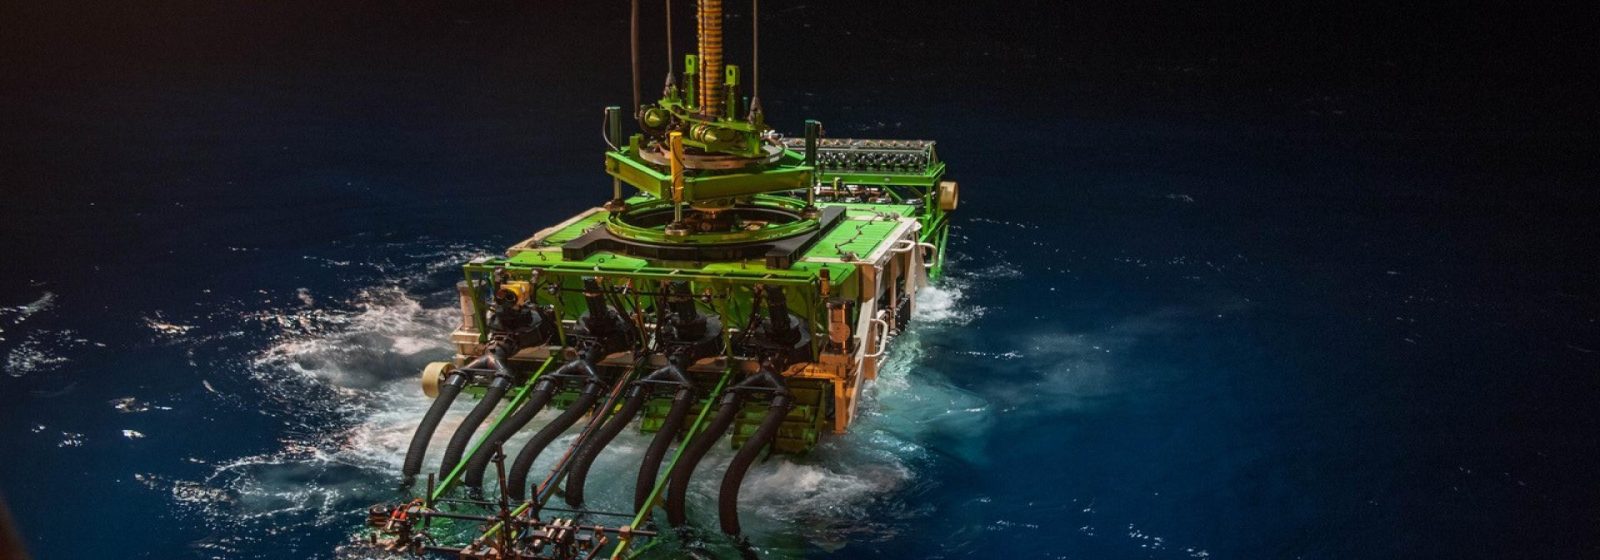 Diepzeerobot Patania van DEME verzamelt grondstoffen op de oceaanbodem.